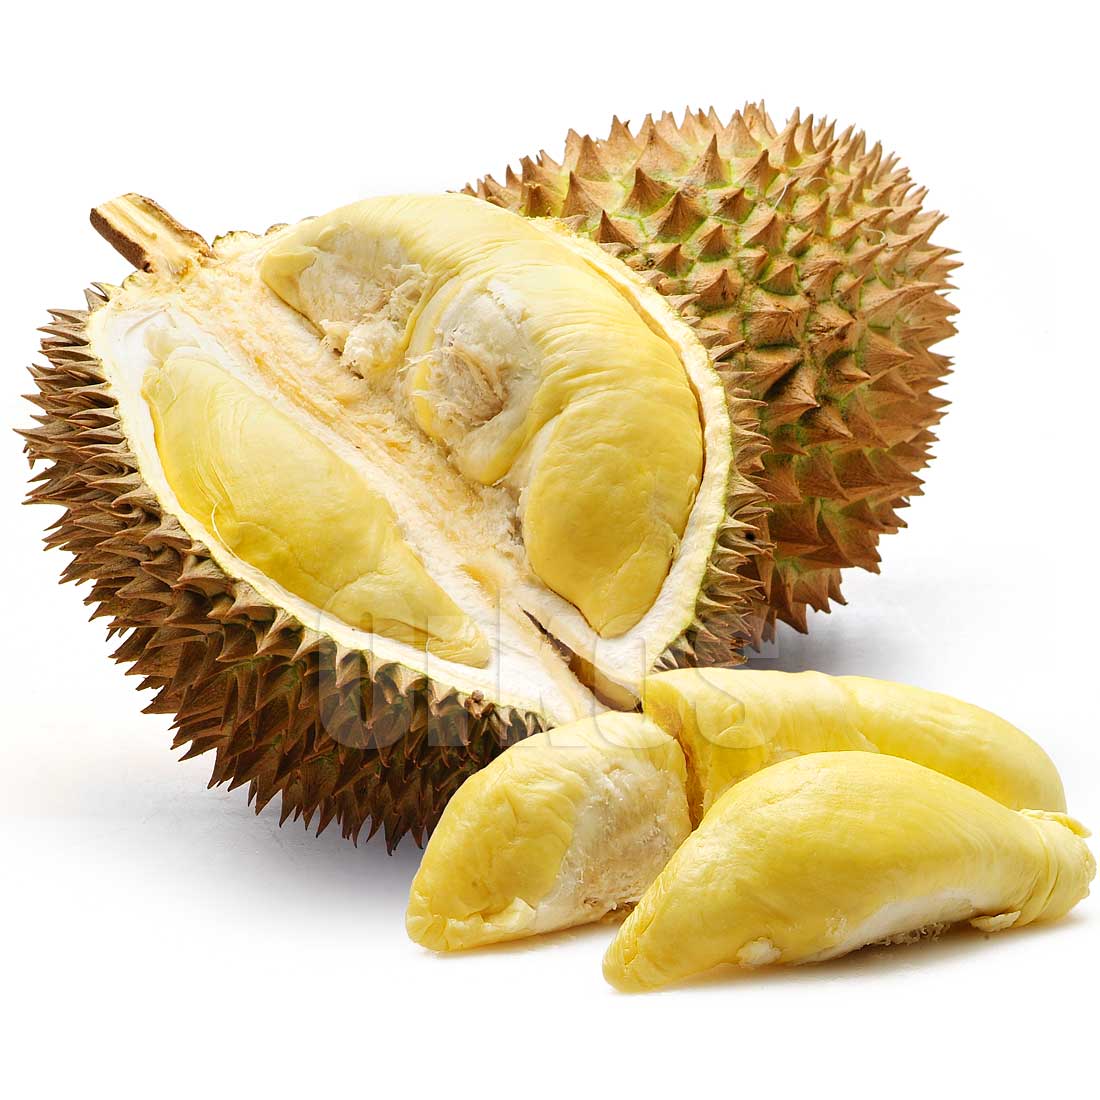 durianfruit1.jpg